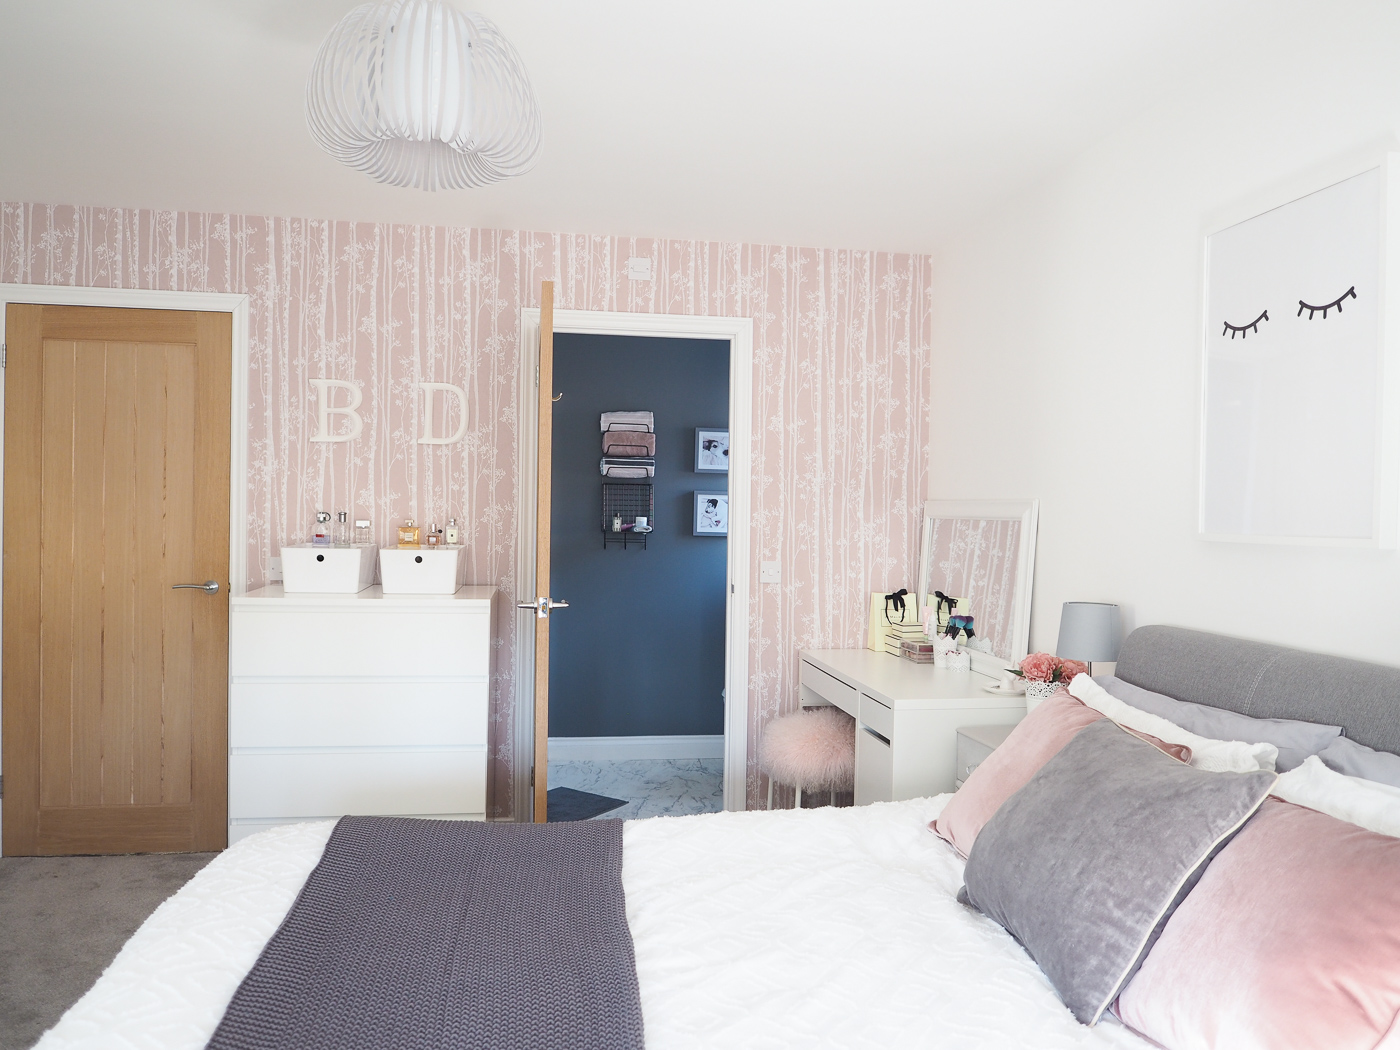 rosa und graue schlafzimmertapete,schlafzimmer,zimmer,möbel,eigentum,bett